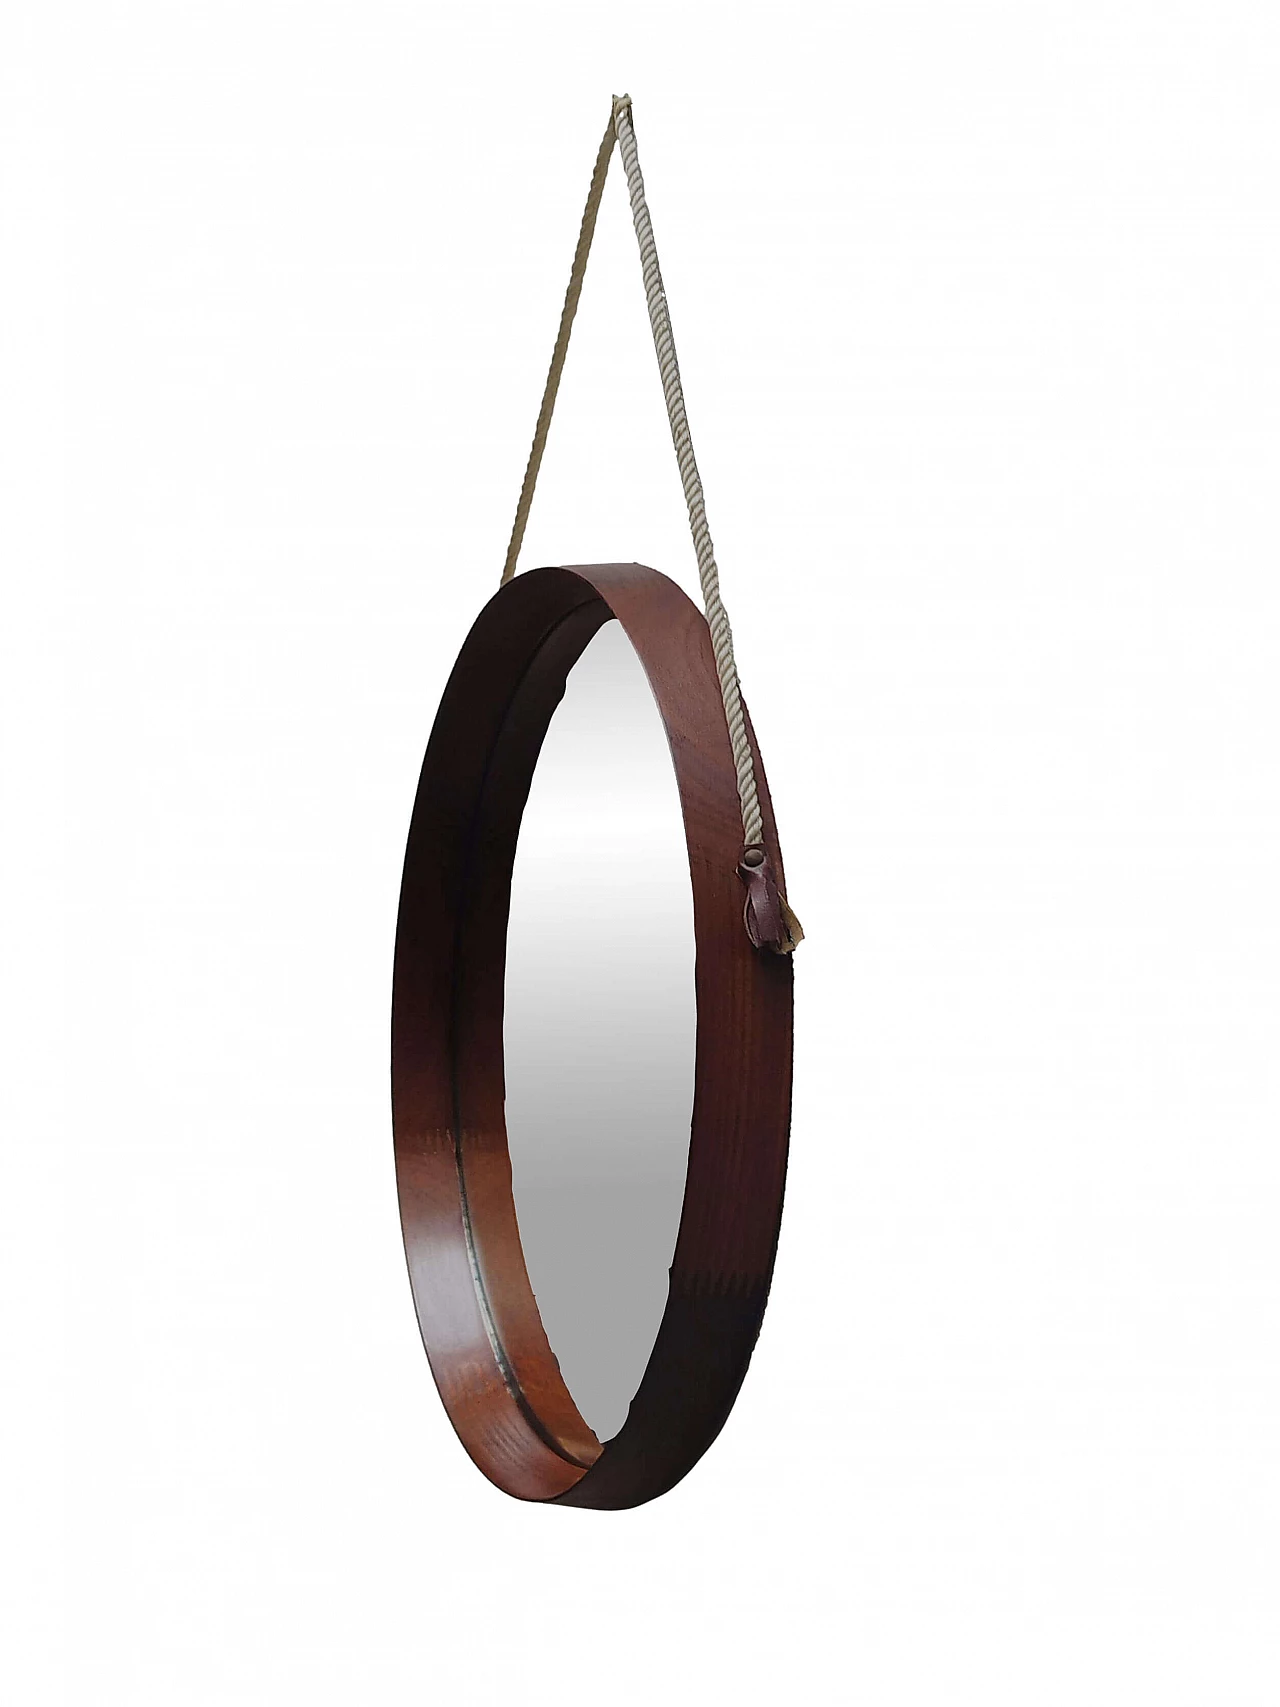 Teak mirror by Uno & Östen Kristiansson for Luxus, 1960s 2